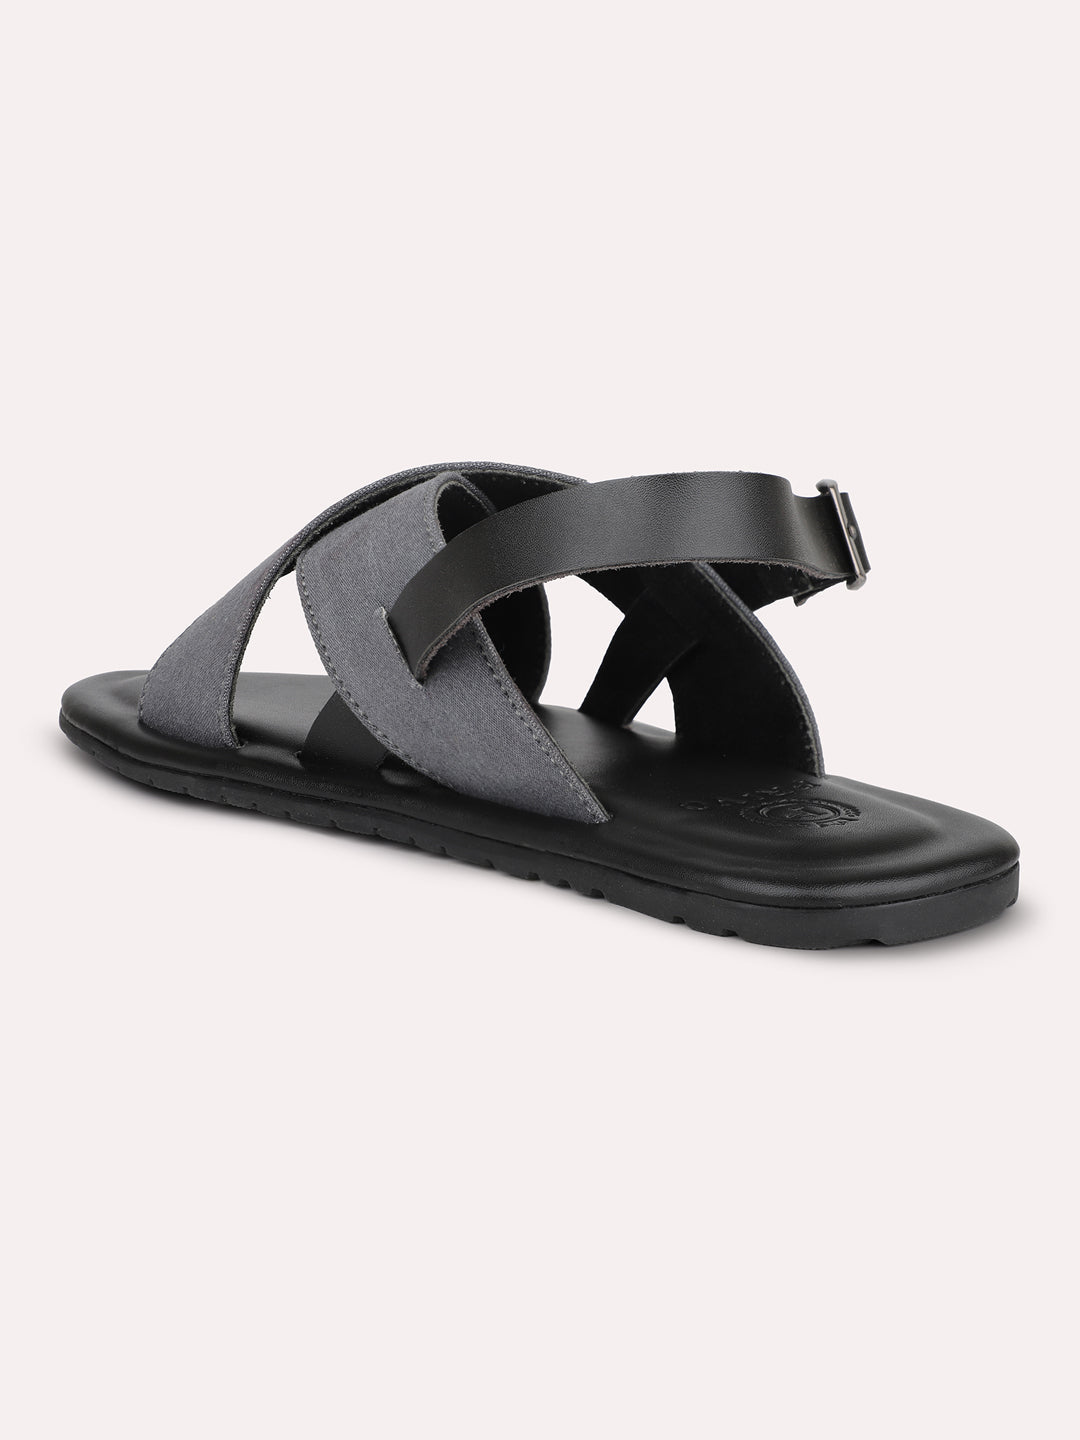 Privo Denim Grey Open Toe Casual Sandal For Men